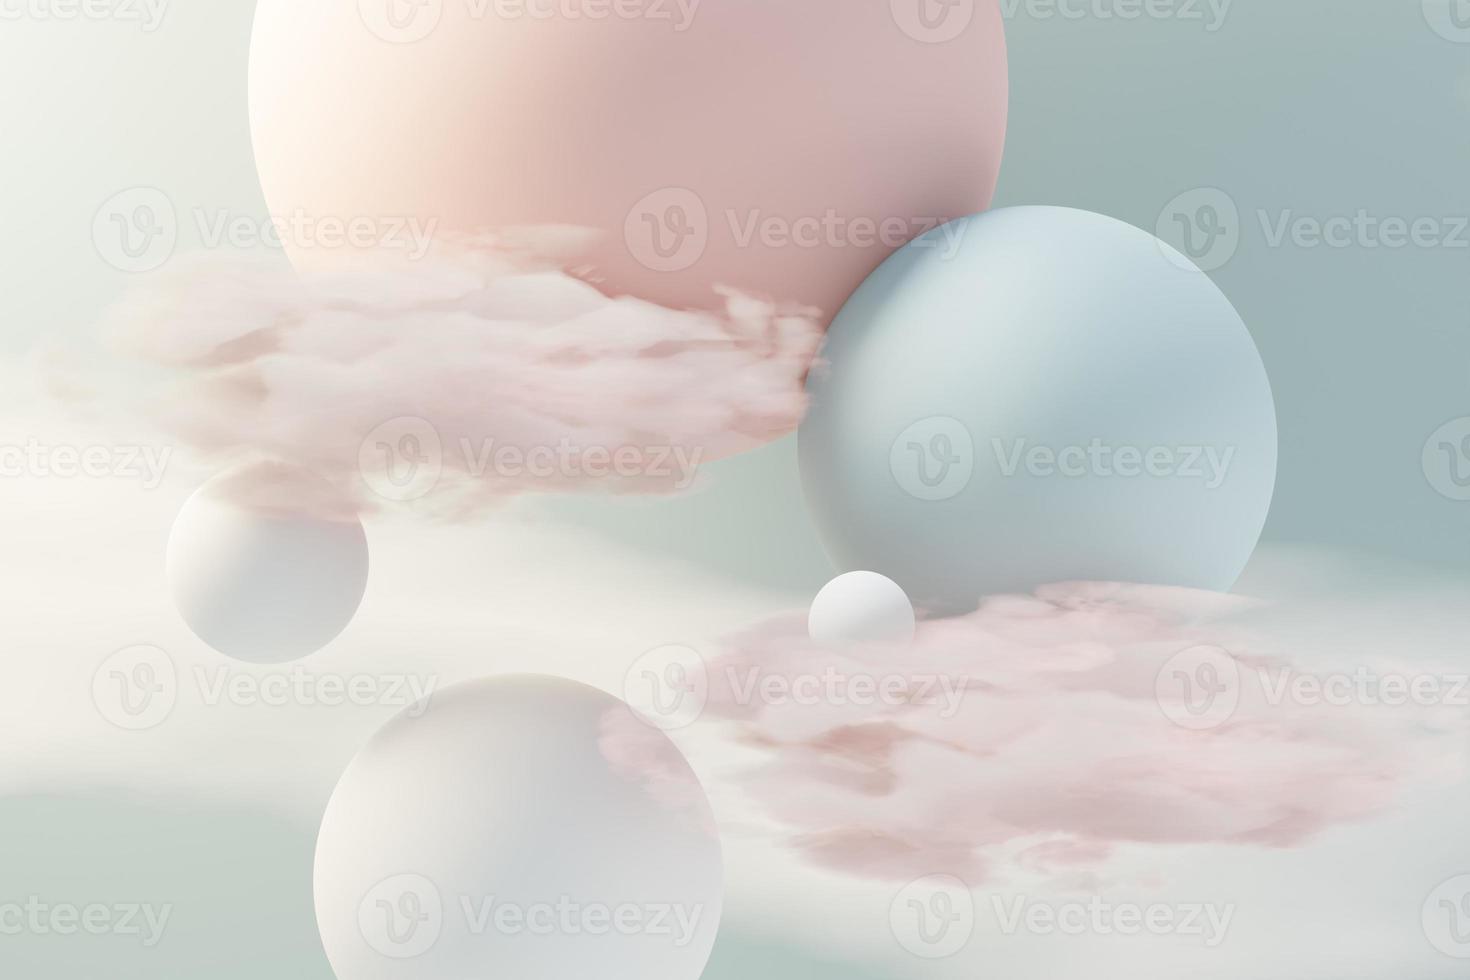 3d renderização de bola pastel, bolhas de sabão, bolhas que flutuam no ar com nuvens fofas e oceano. romance terra da cena dos sonhos. céu sonhador abstrato natural. foto